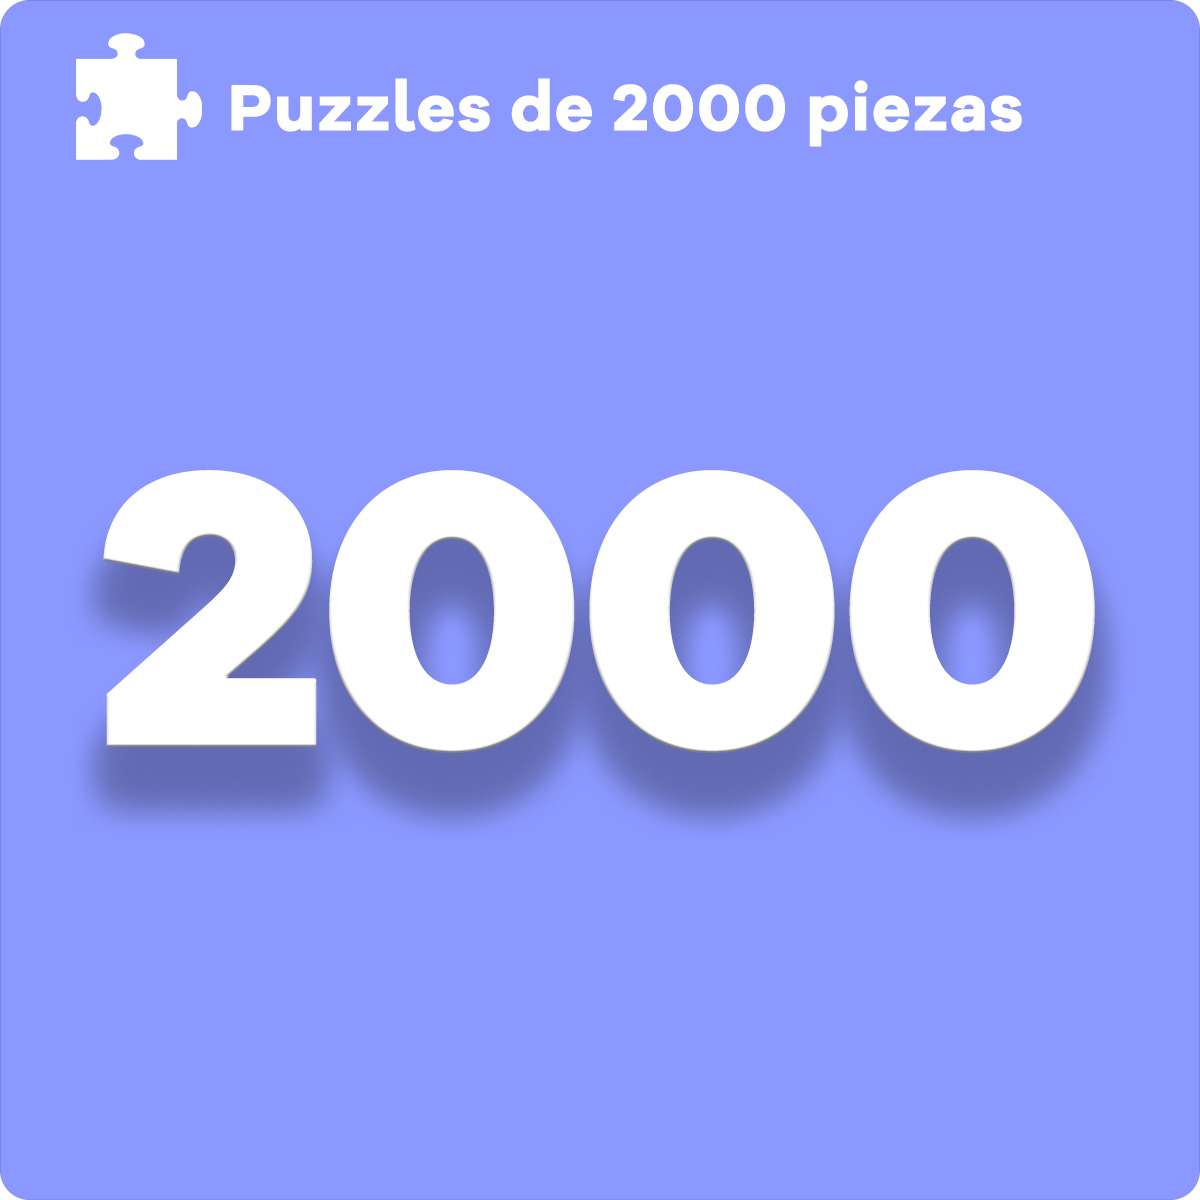 Comprar puzzles de 2000 piezas